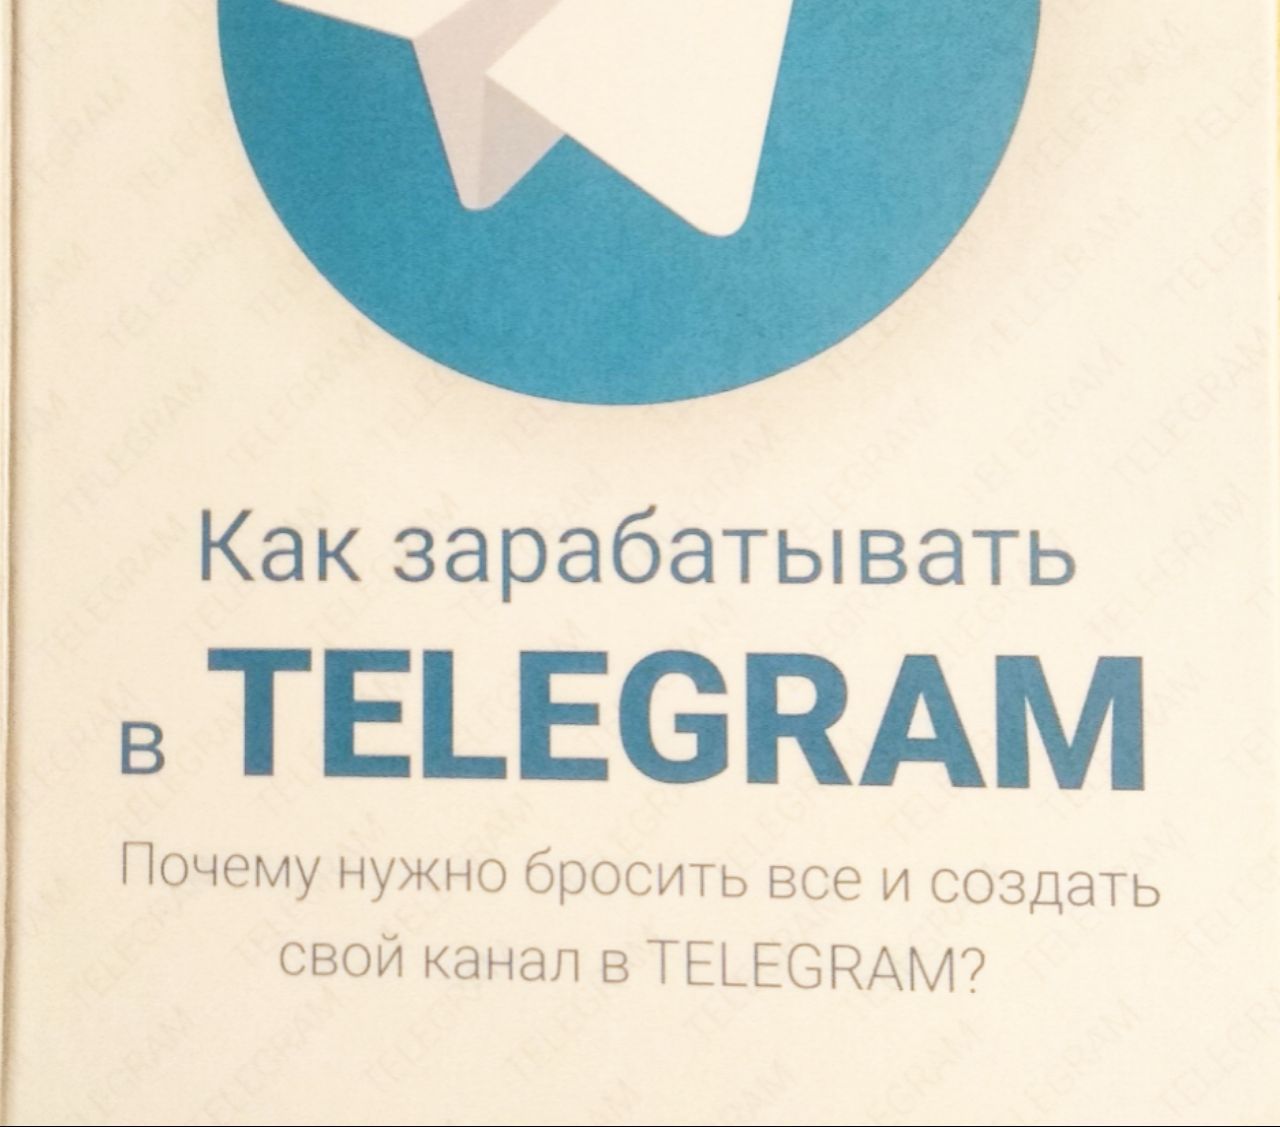 В телеграмм скачать книги бесплатно фото 6